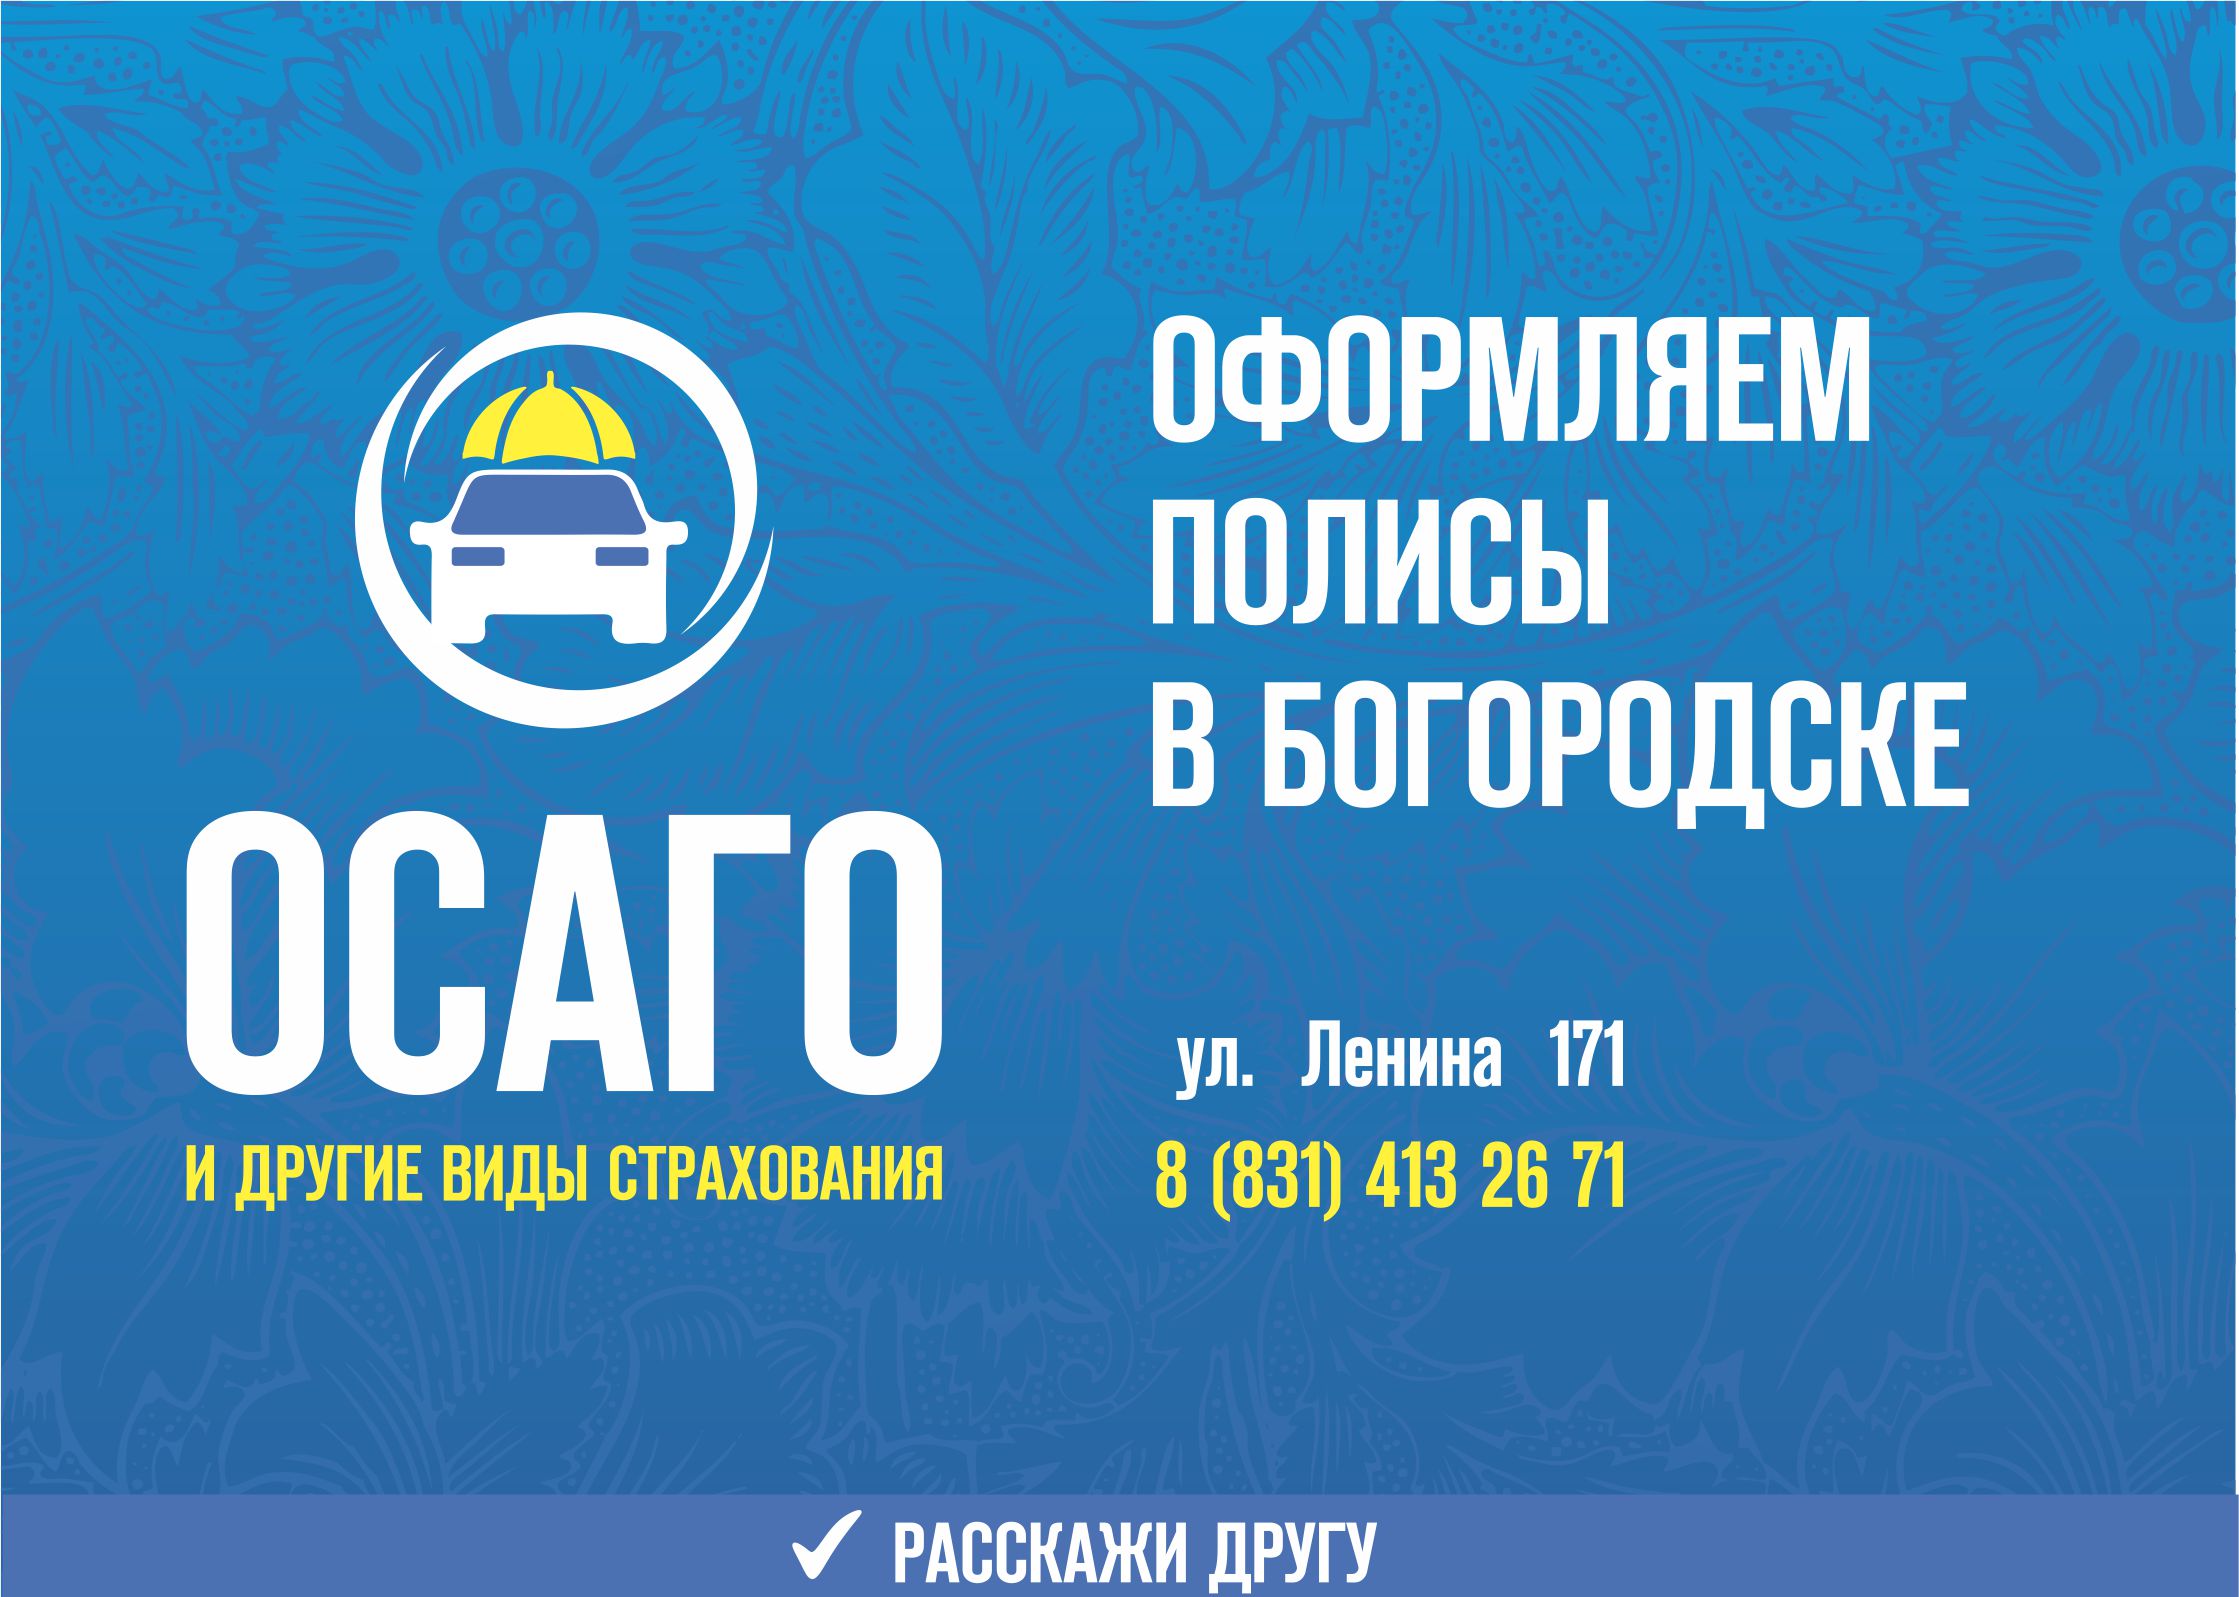 Оформляем полисы ОСАГО в Богородске, а также другие страховые продукты по адресу: ул. Ленина 171, первый этаж. Телефон: 8 *31) 413-26-71